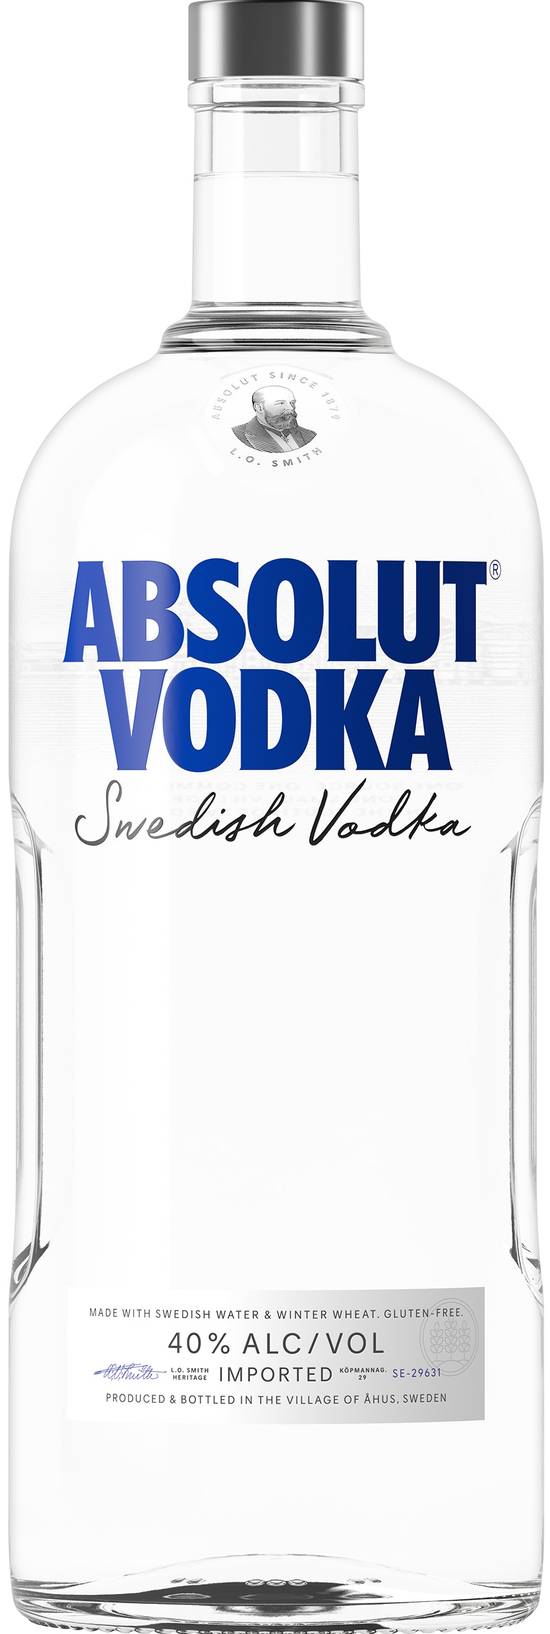 Absolut Swedish Vodka (1.75 L)